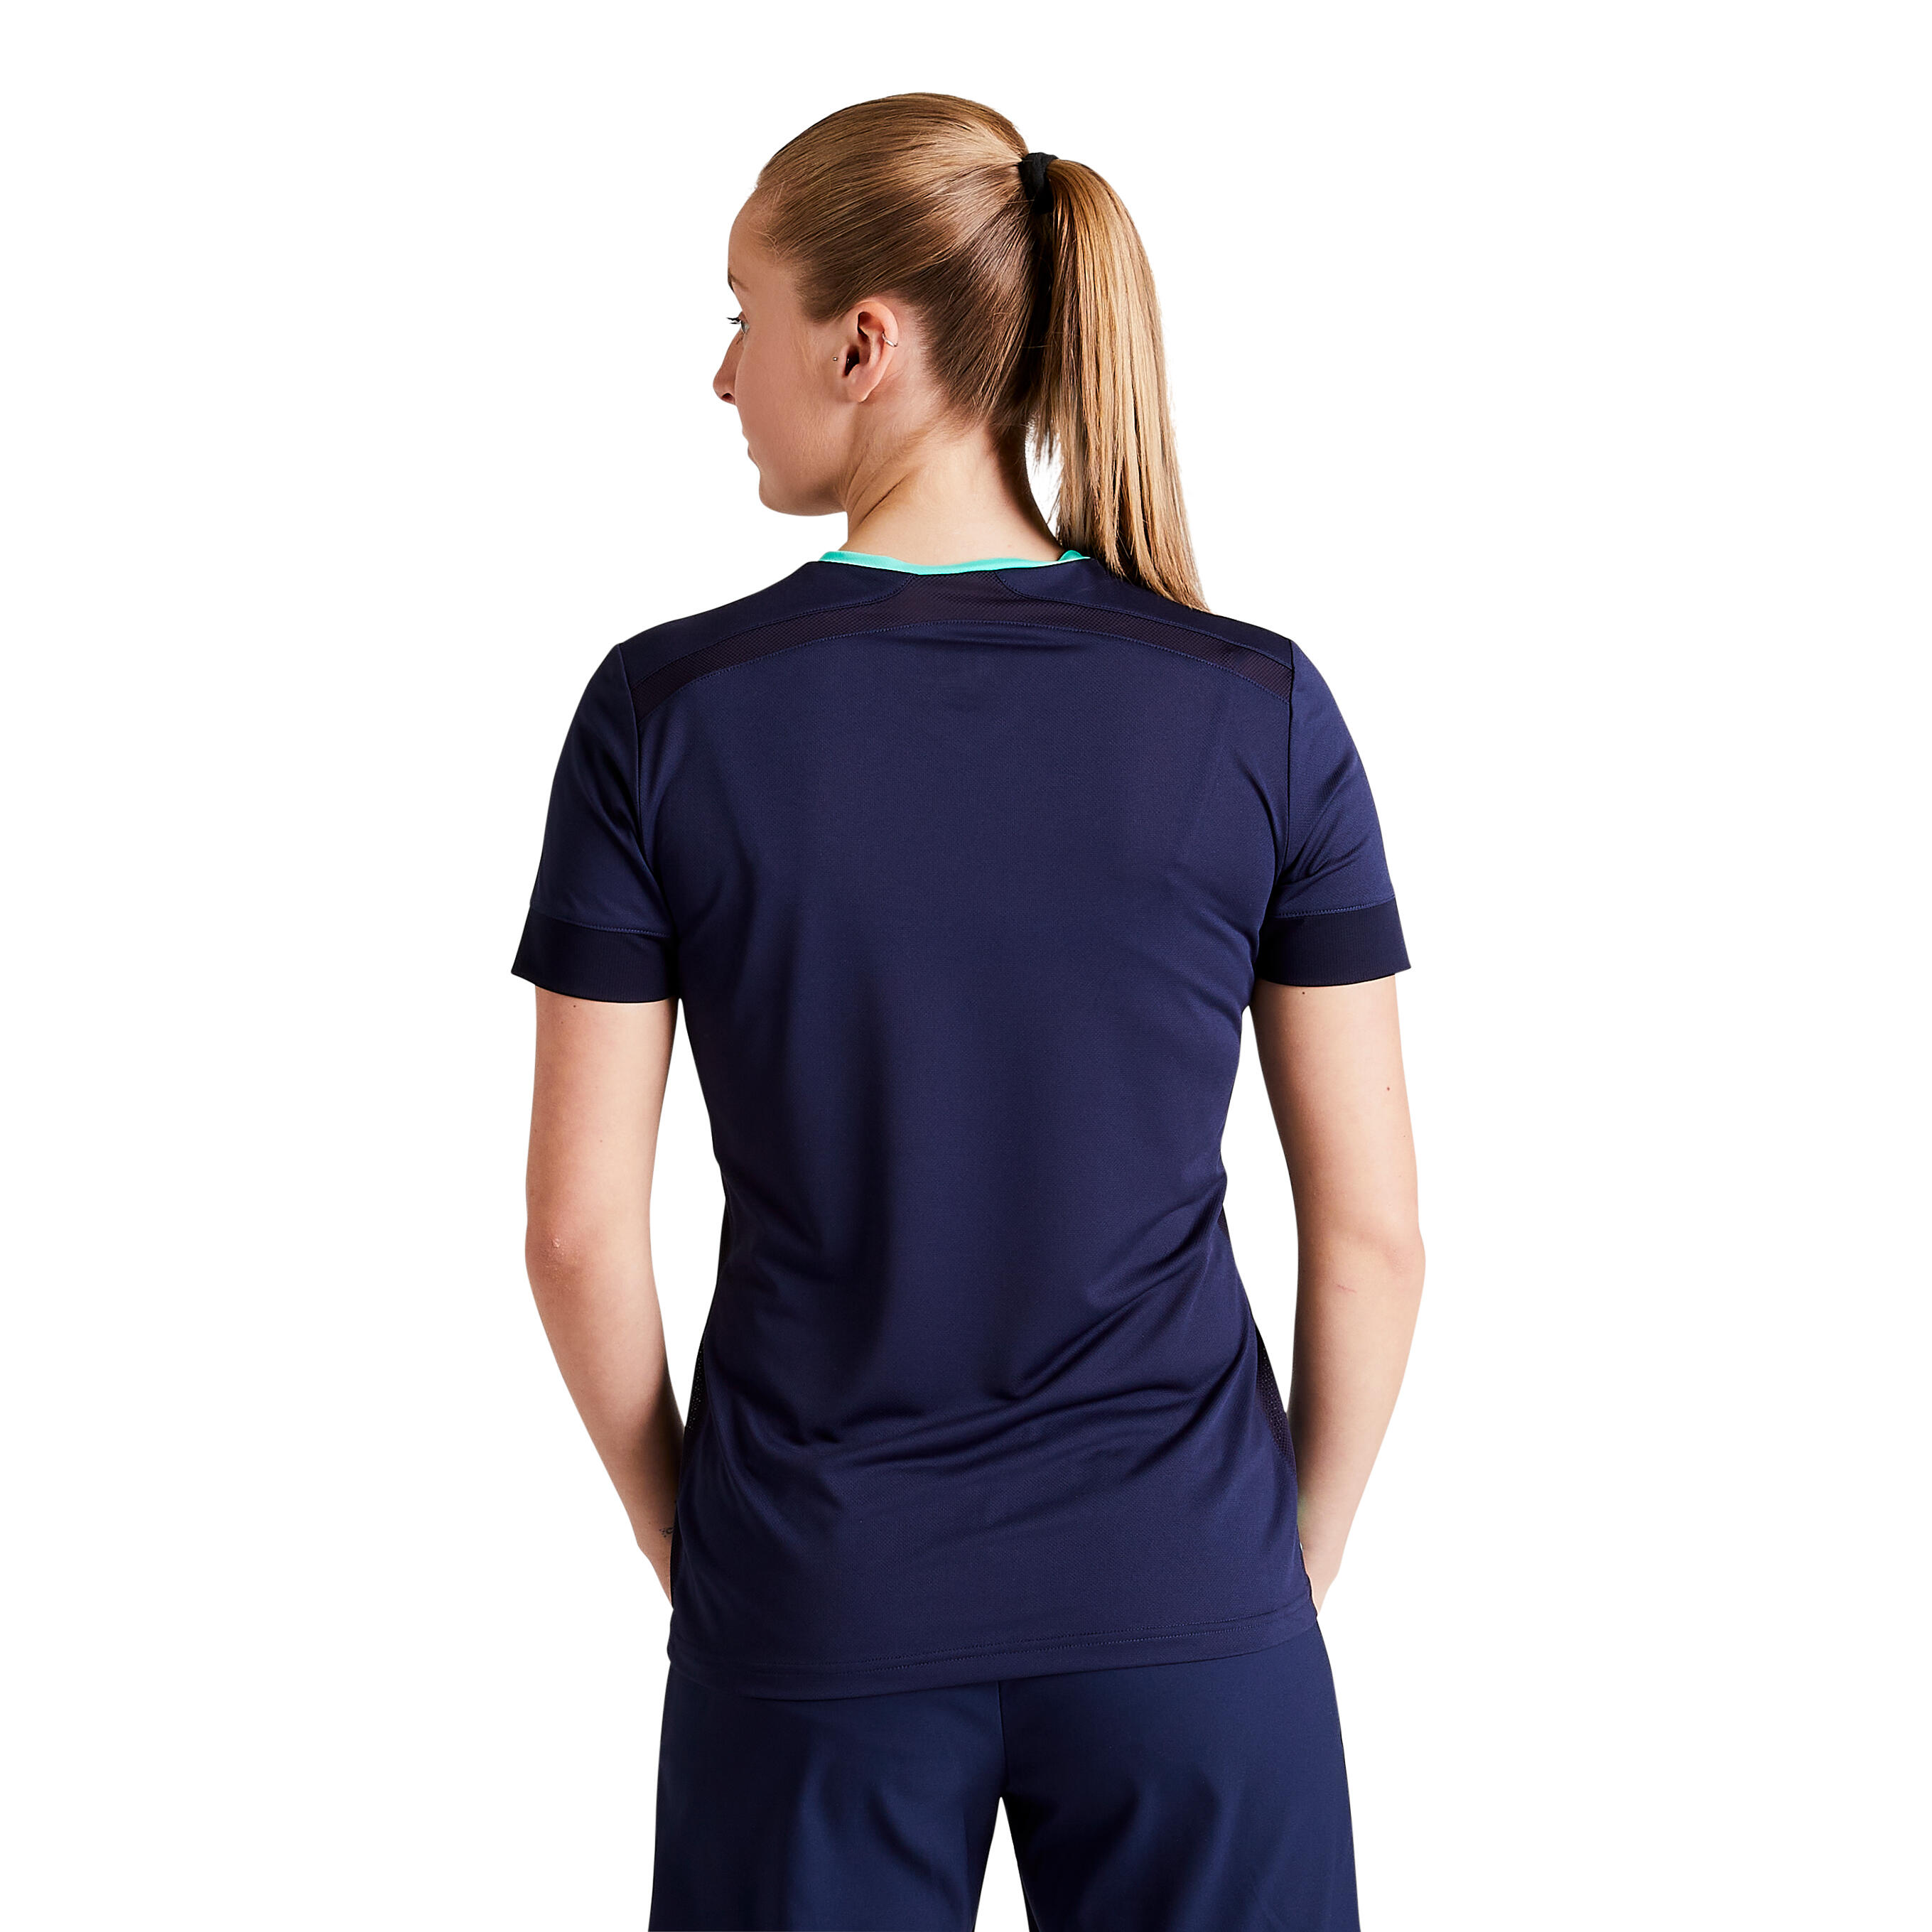 Women's Football Jersey F500 - Blue/Green 13/13